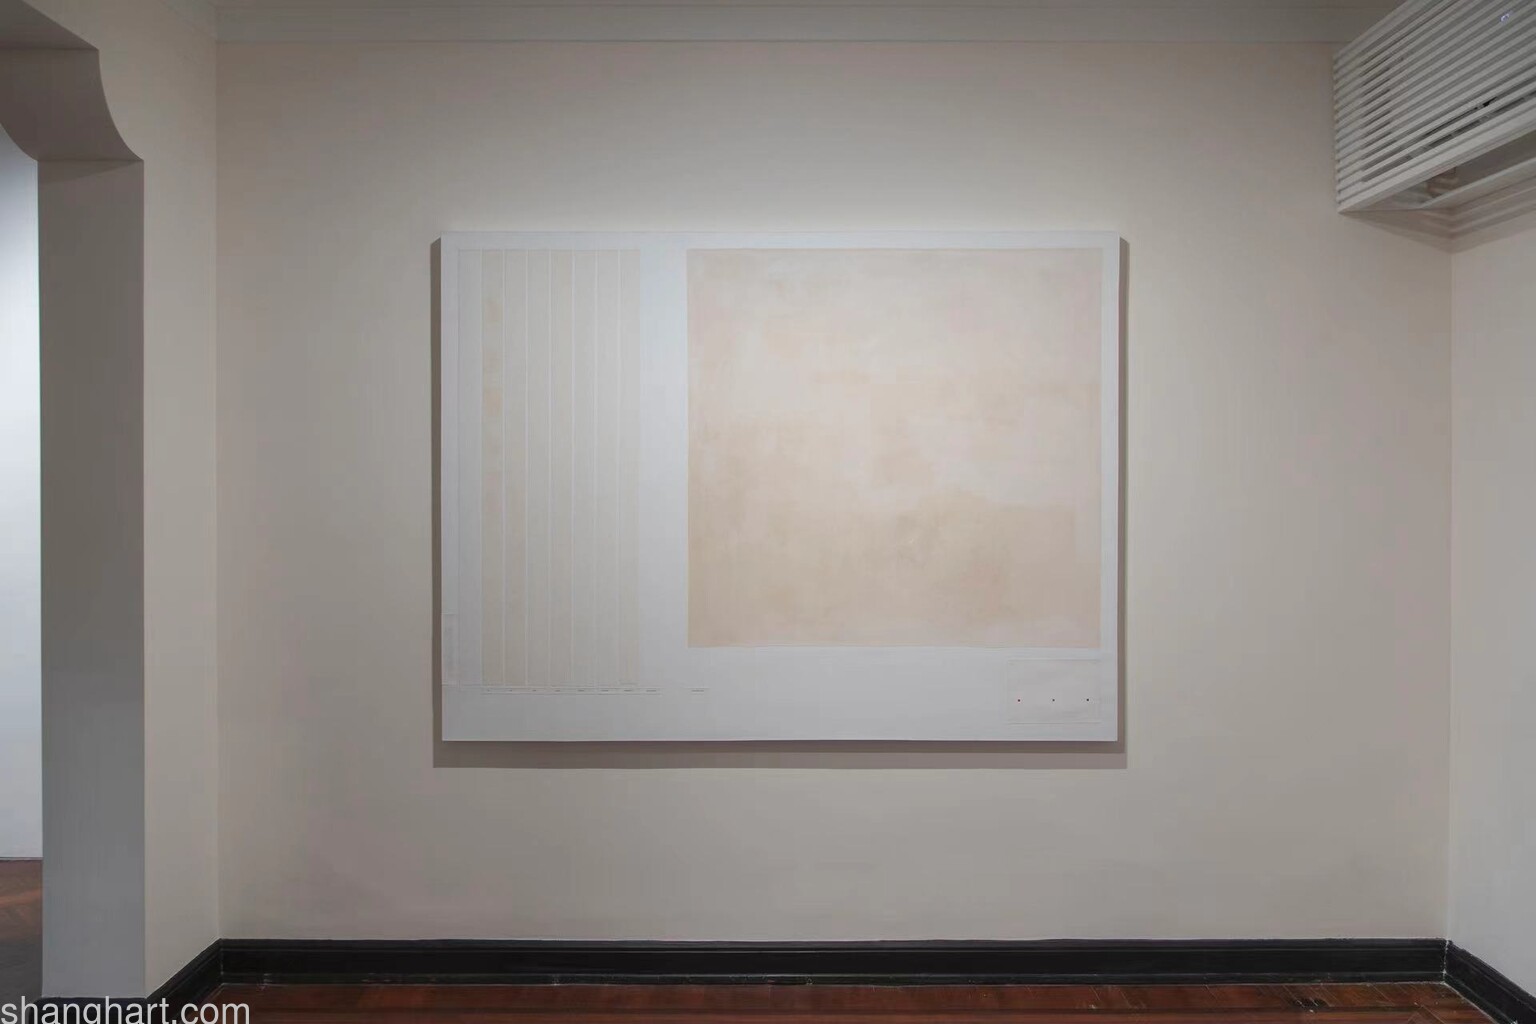 刘月, 为极限值得唯一-漂白, 2013, 绘画, 150(H)*200cm